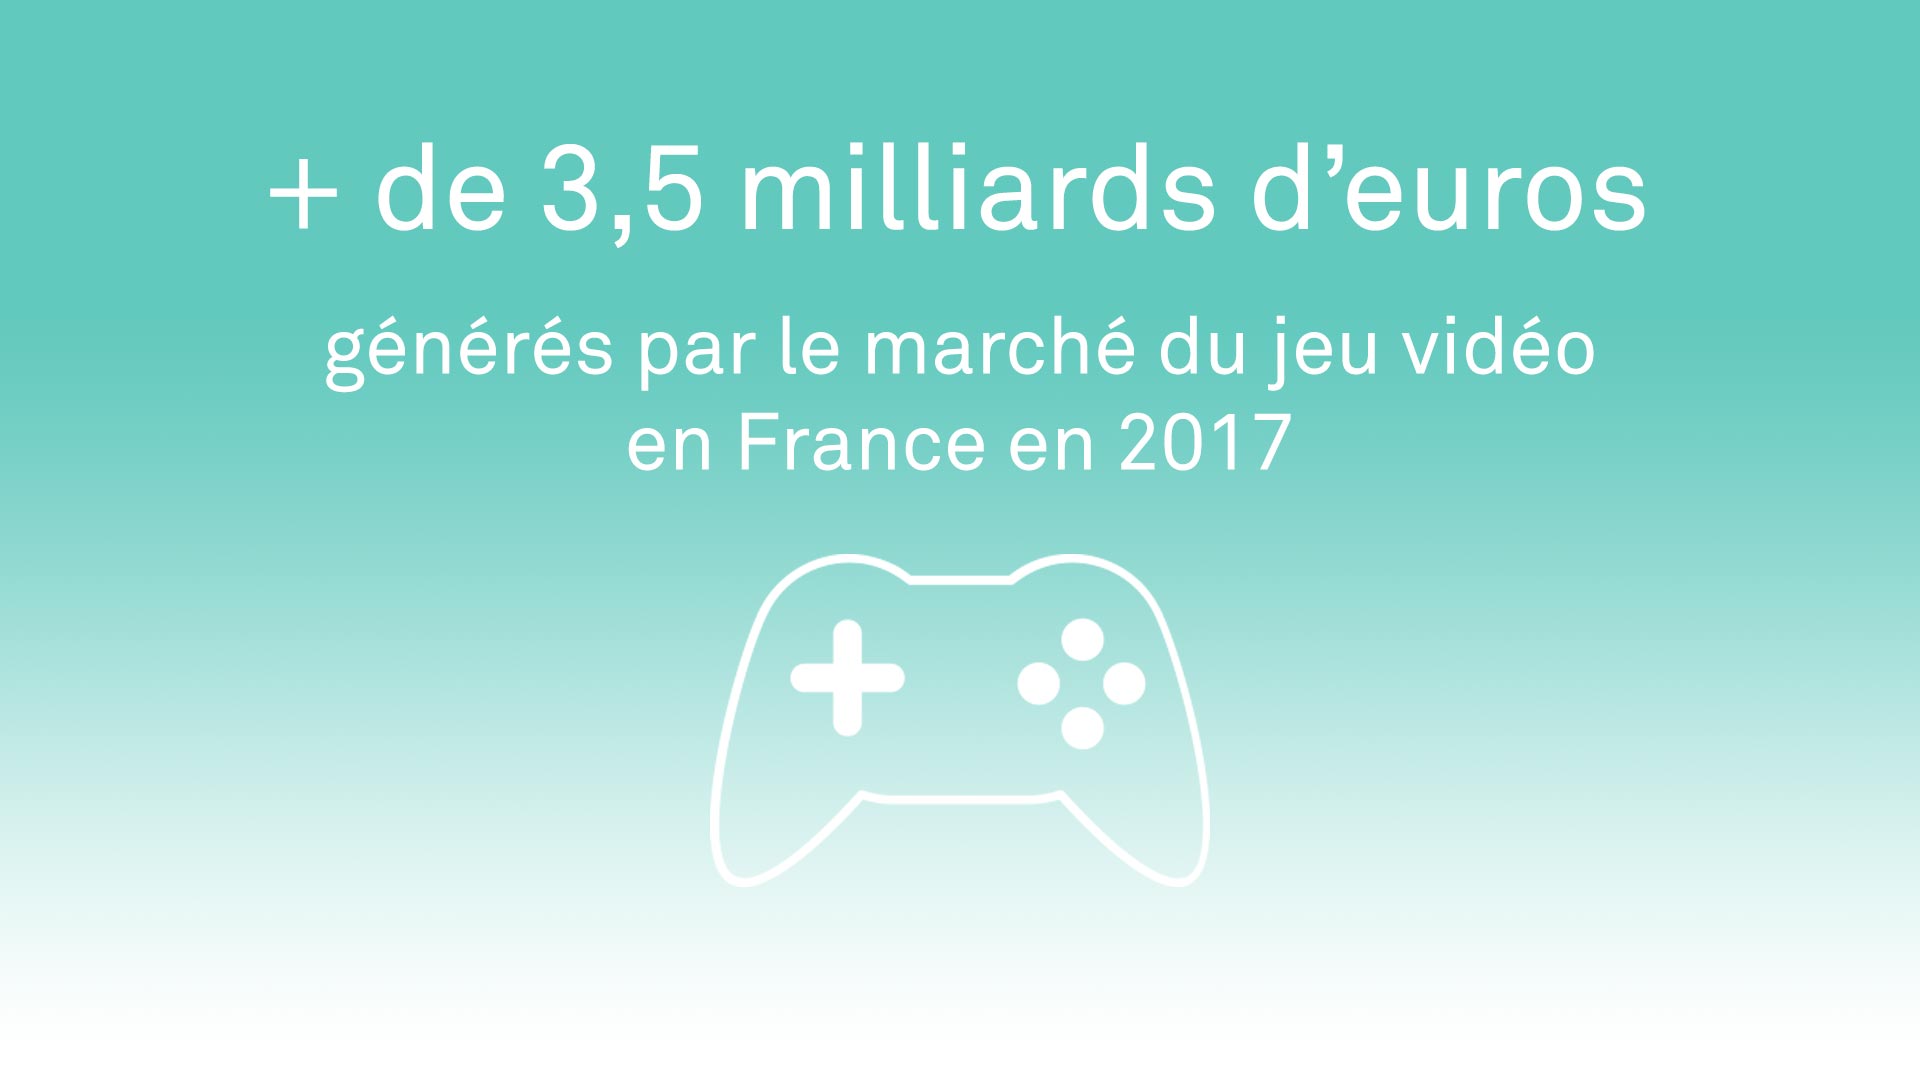 Chiffre-clé : La part de marché du jeu vidéo en France en 2017